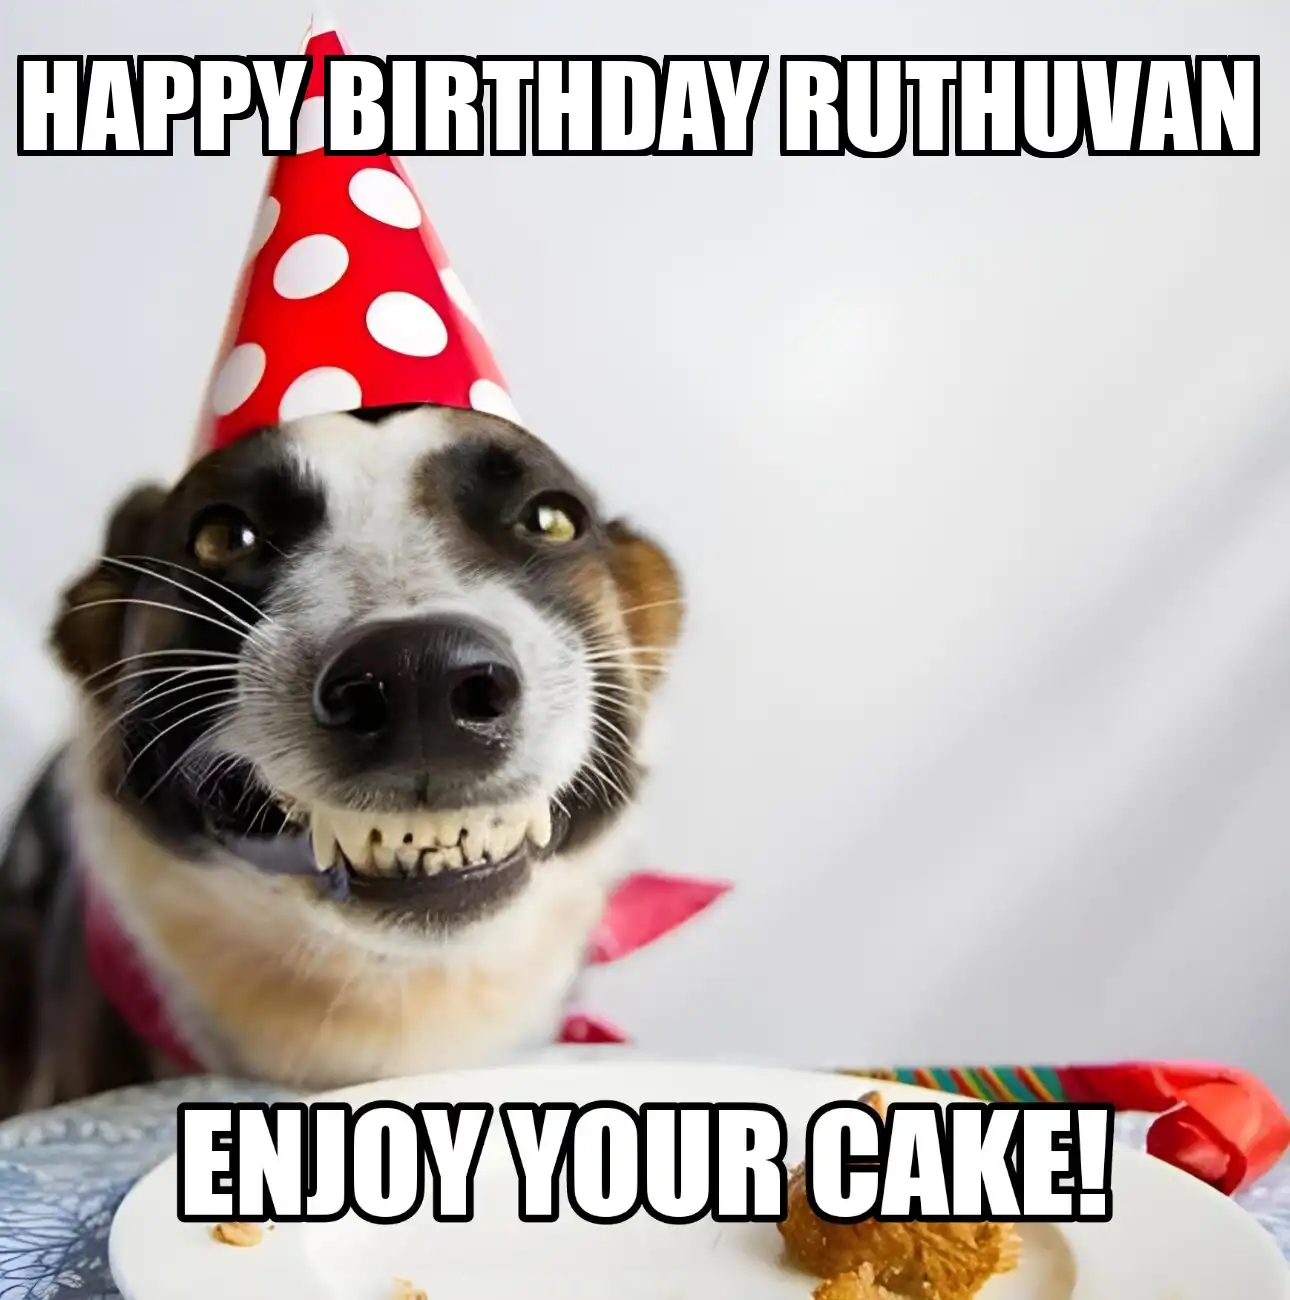 Happy Birthday Ruthuvan Enjoy Your Cake Dog Meme